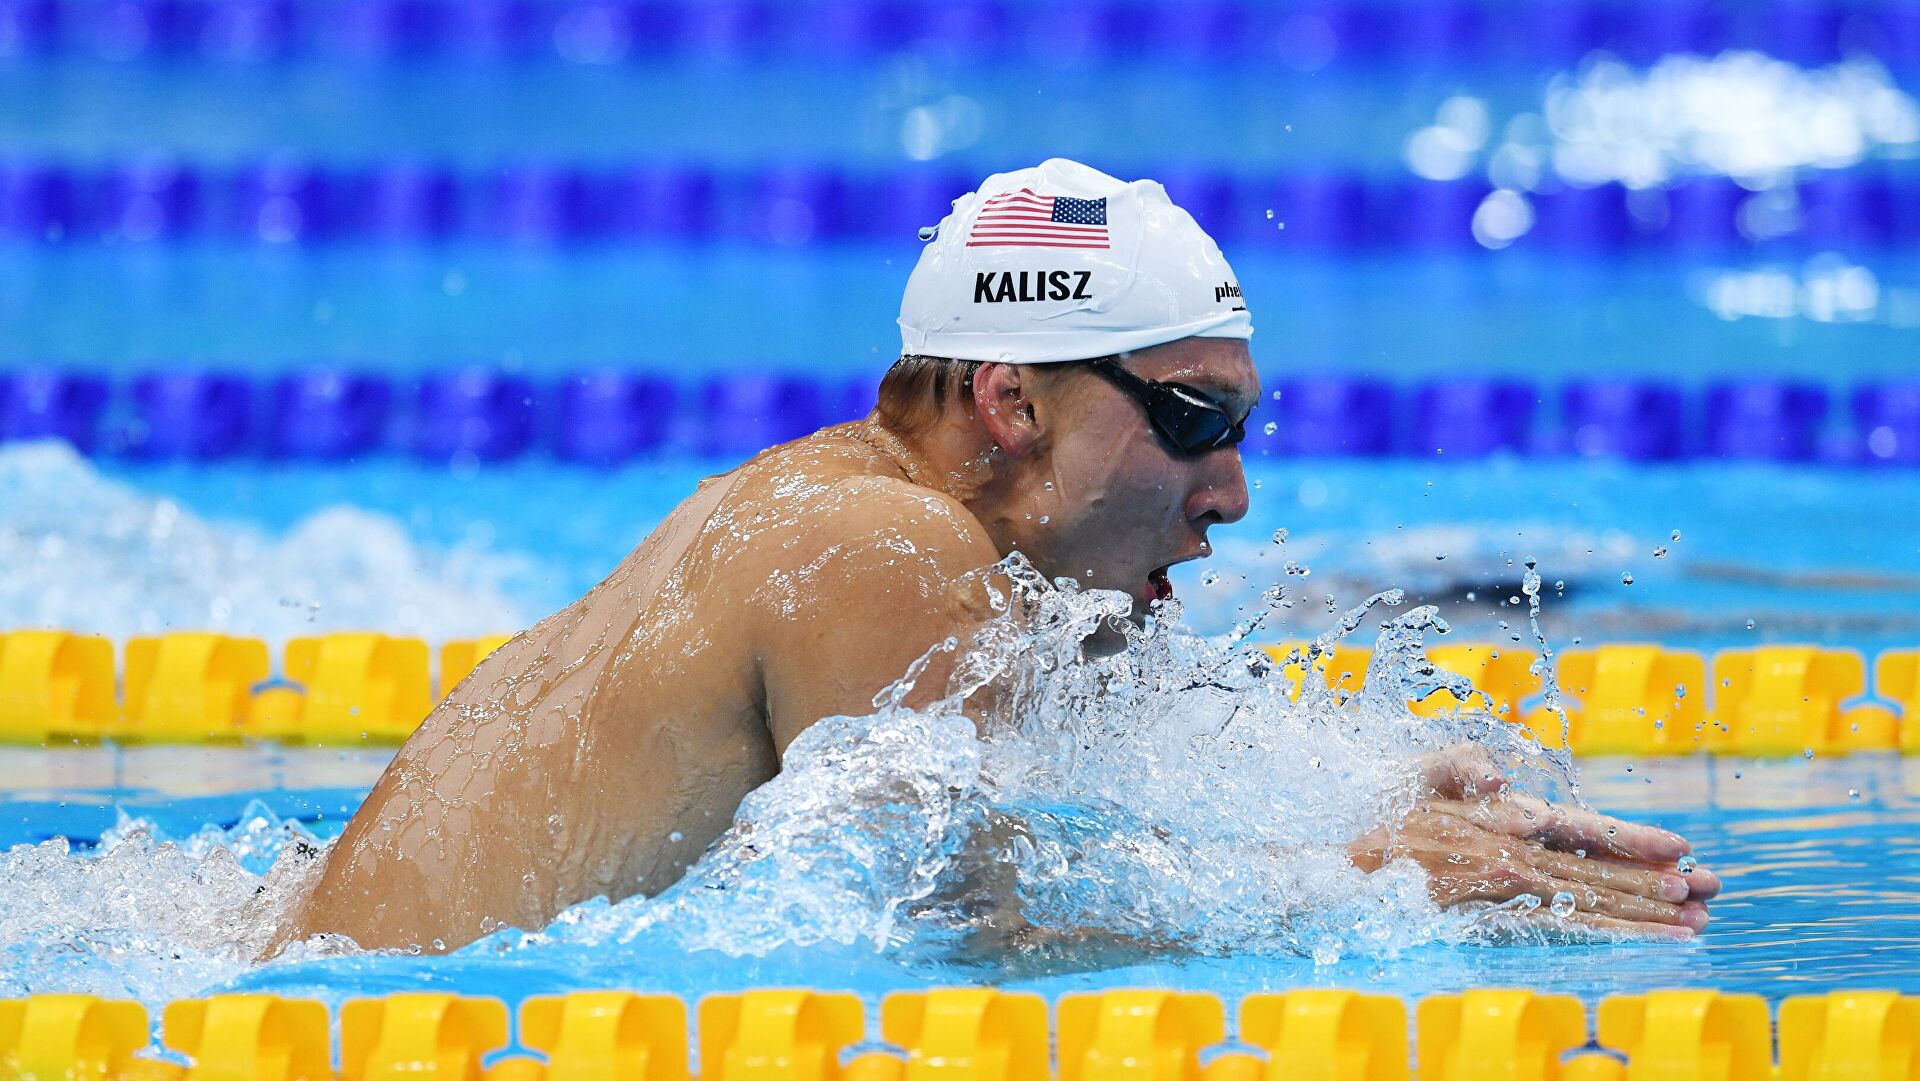 Американец Калиш выиграл первое золото Олимпиады-2020 в плавании 